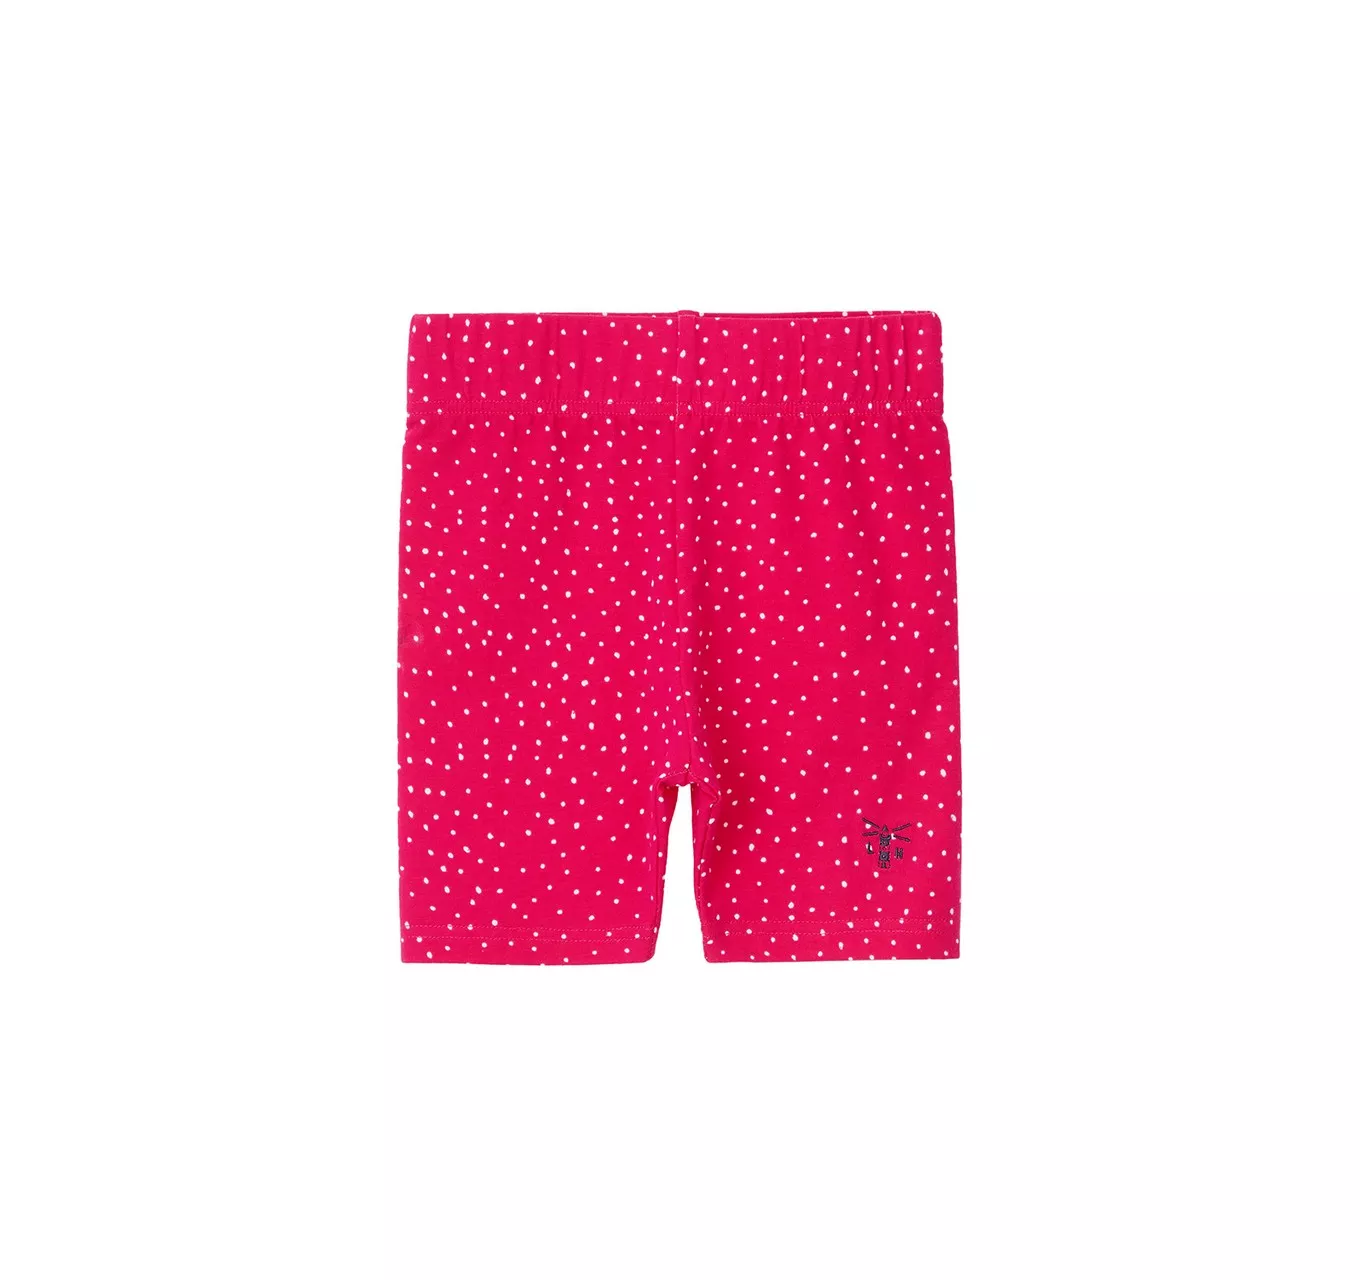 Polly Shorts Pink Dot 4-5